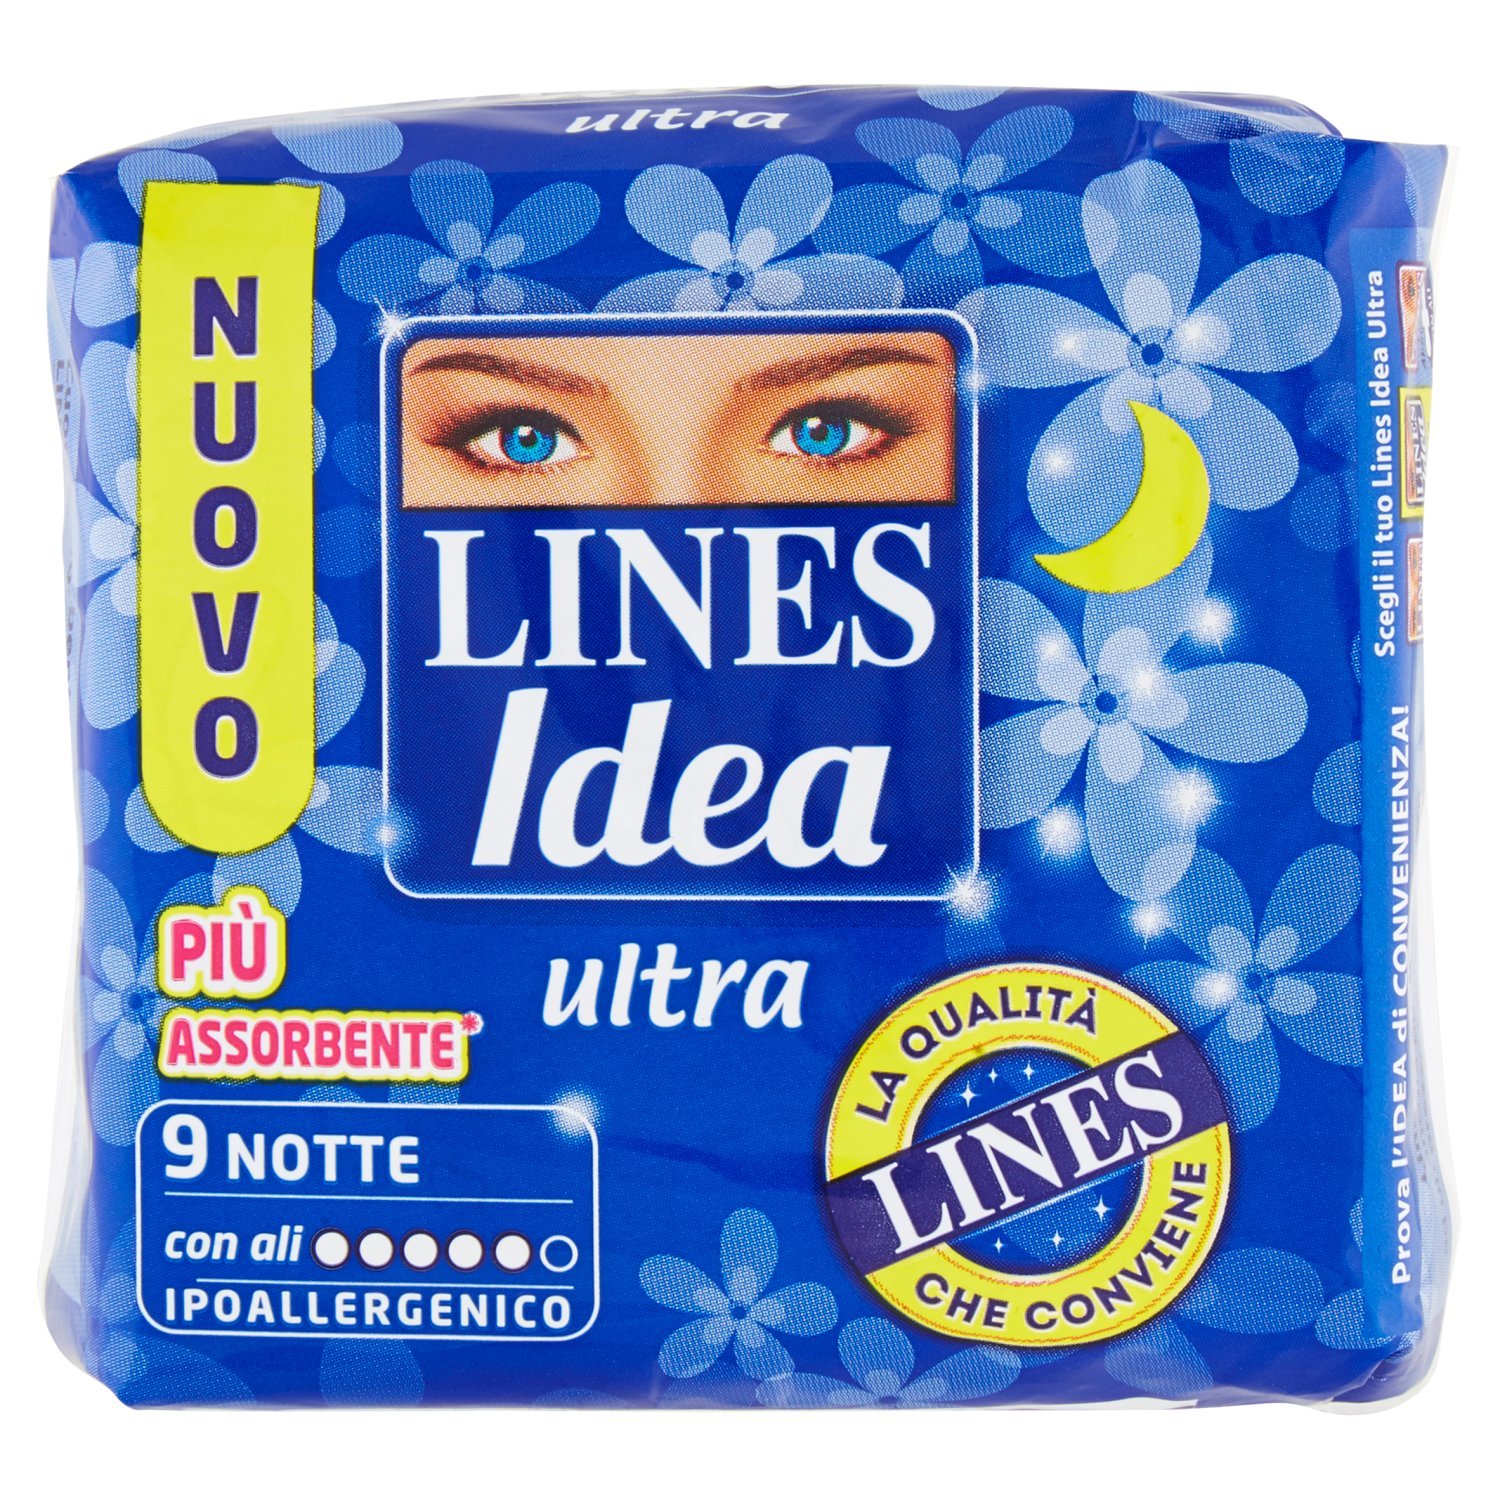 Lines Idea Ultra Notte 9pz